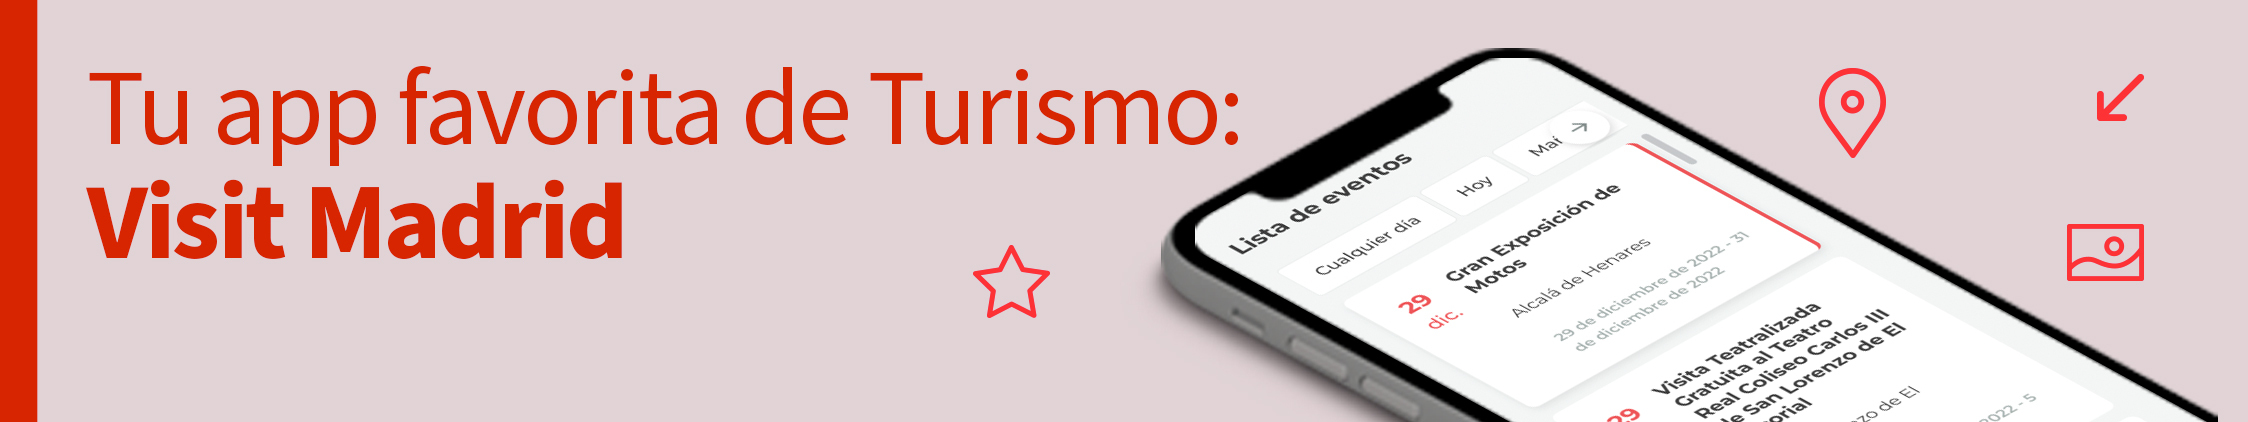 app turismo comunidad de madrid